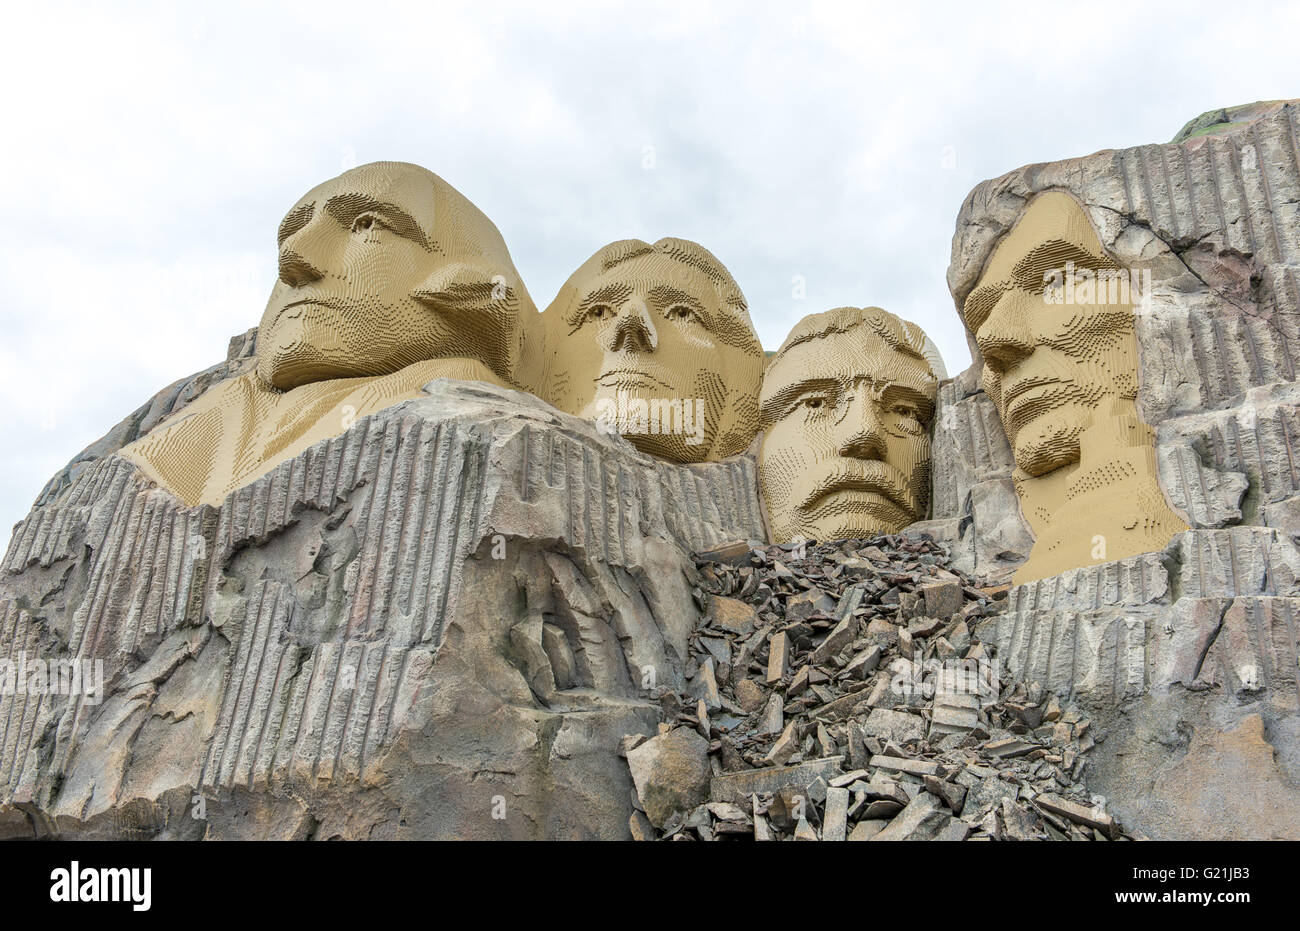 Rock-Porträts von vier amerikanischen Präsidenten am Mount Rushmore, machte Replik von Lego-Steinen, Legoland Billund, Dänemark Stockfoto